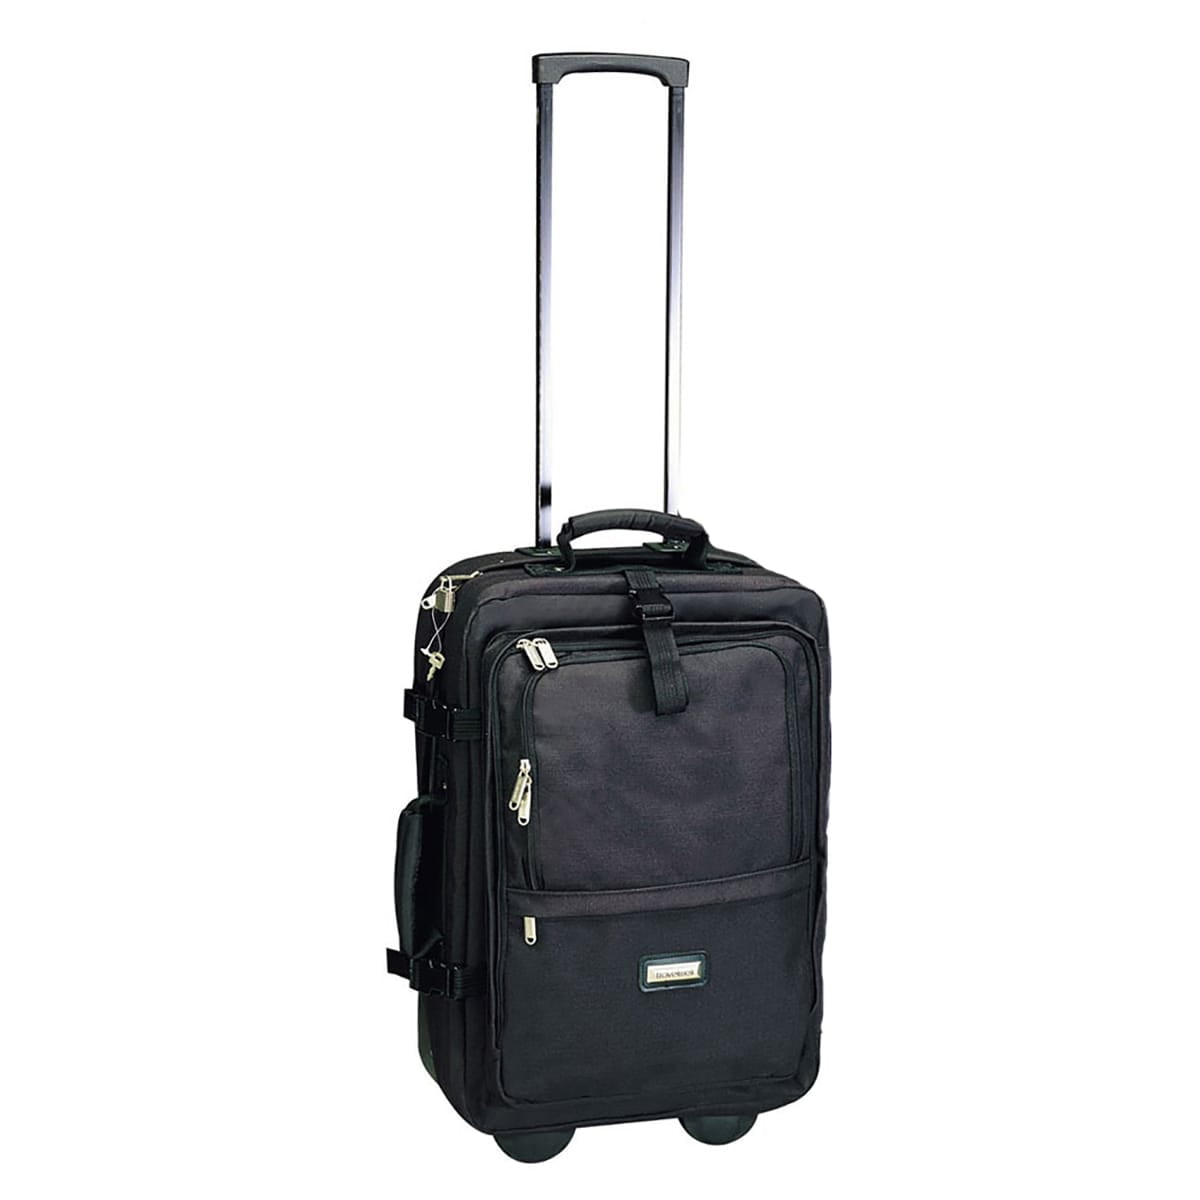 Compu Backpack Express Luggage - Walmart.com